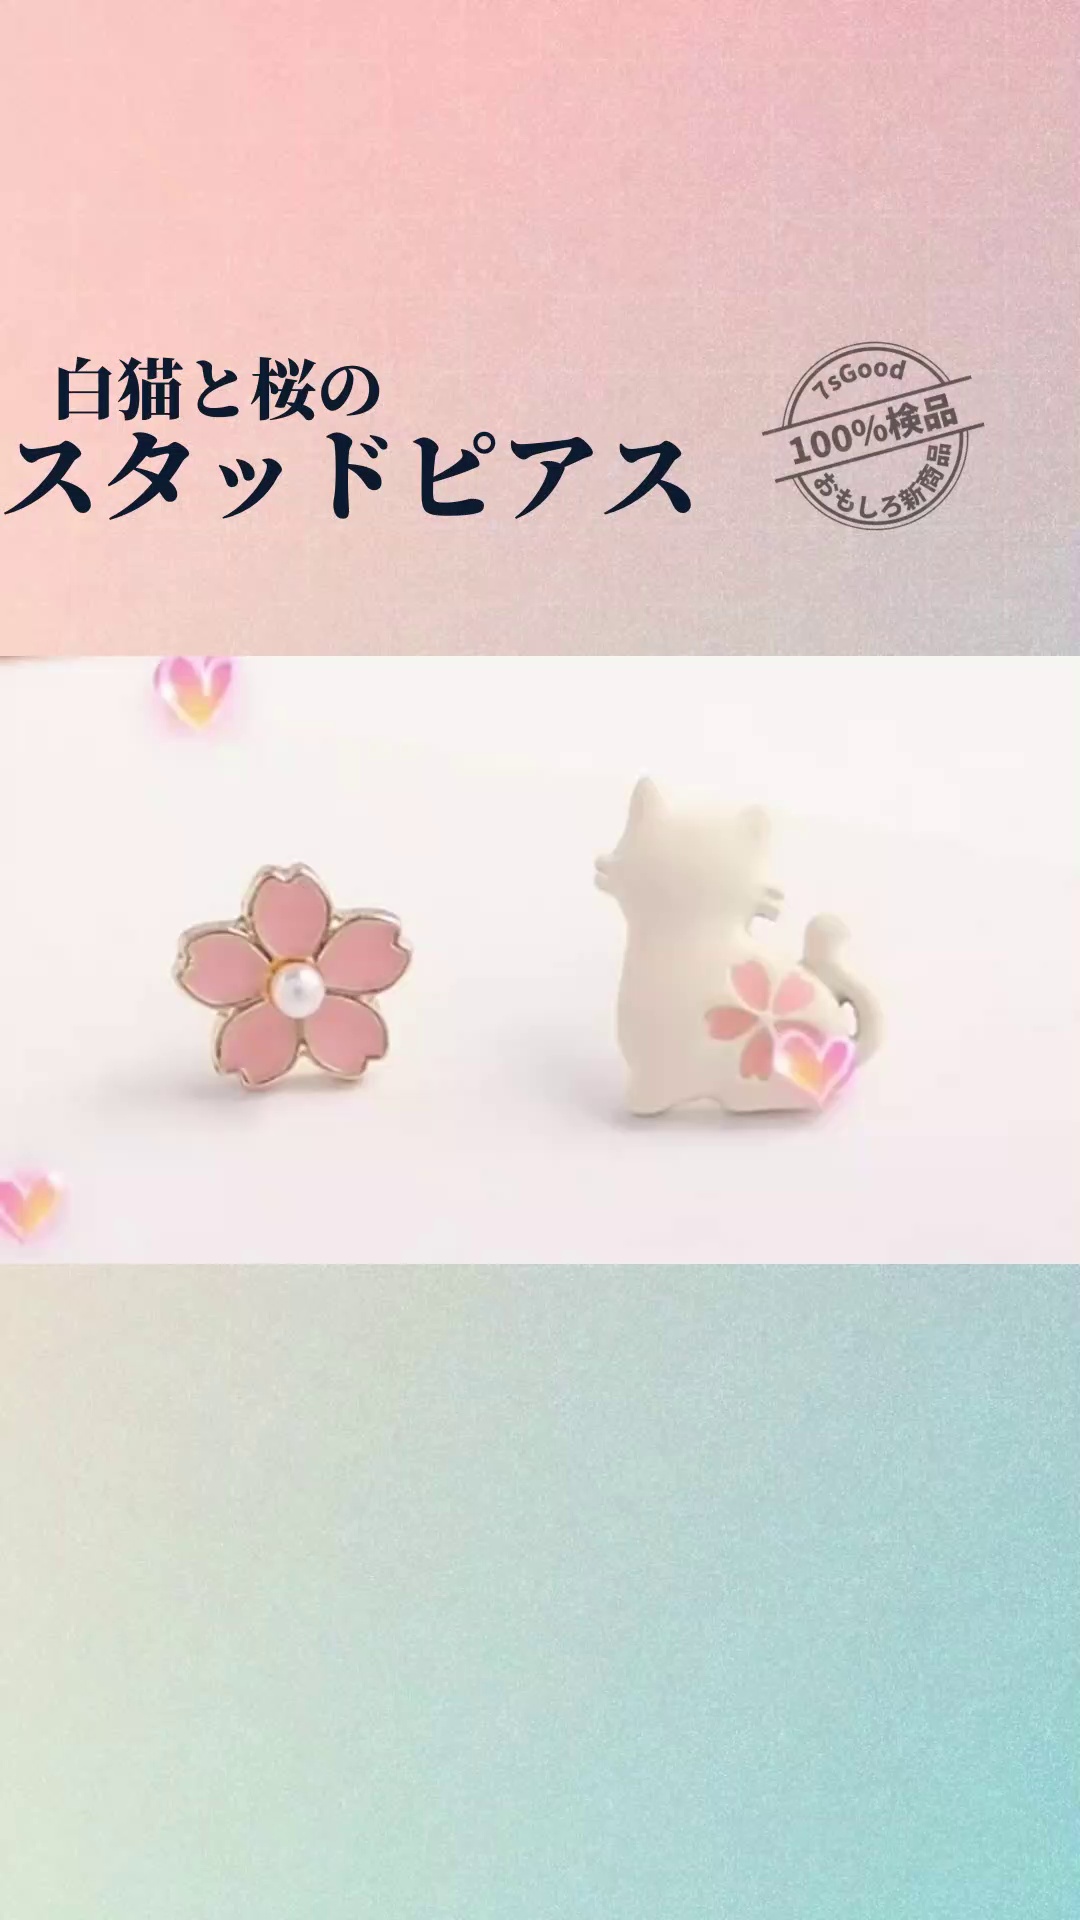 小さな白猫と桜のスタッドピアス| ピアス イヤリング 猫 桜 かわいい